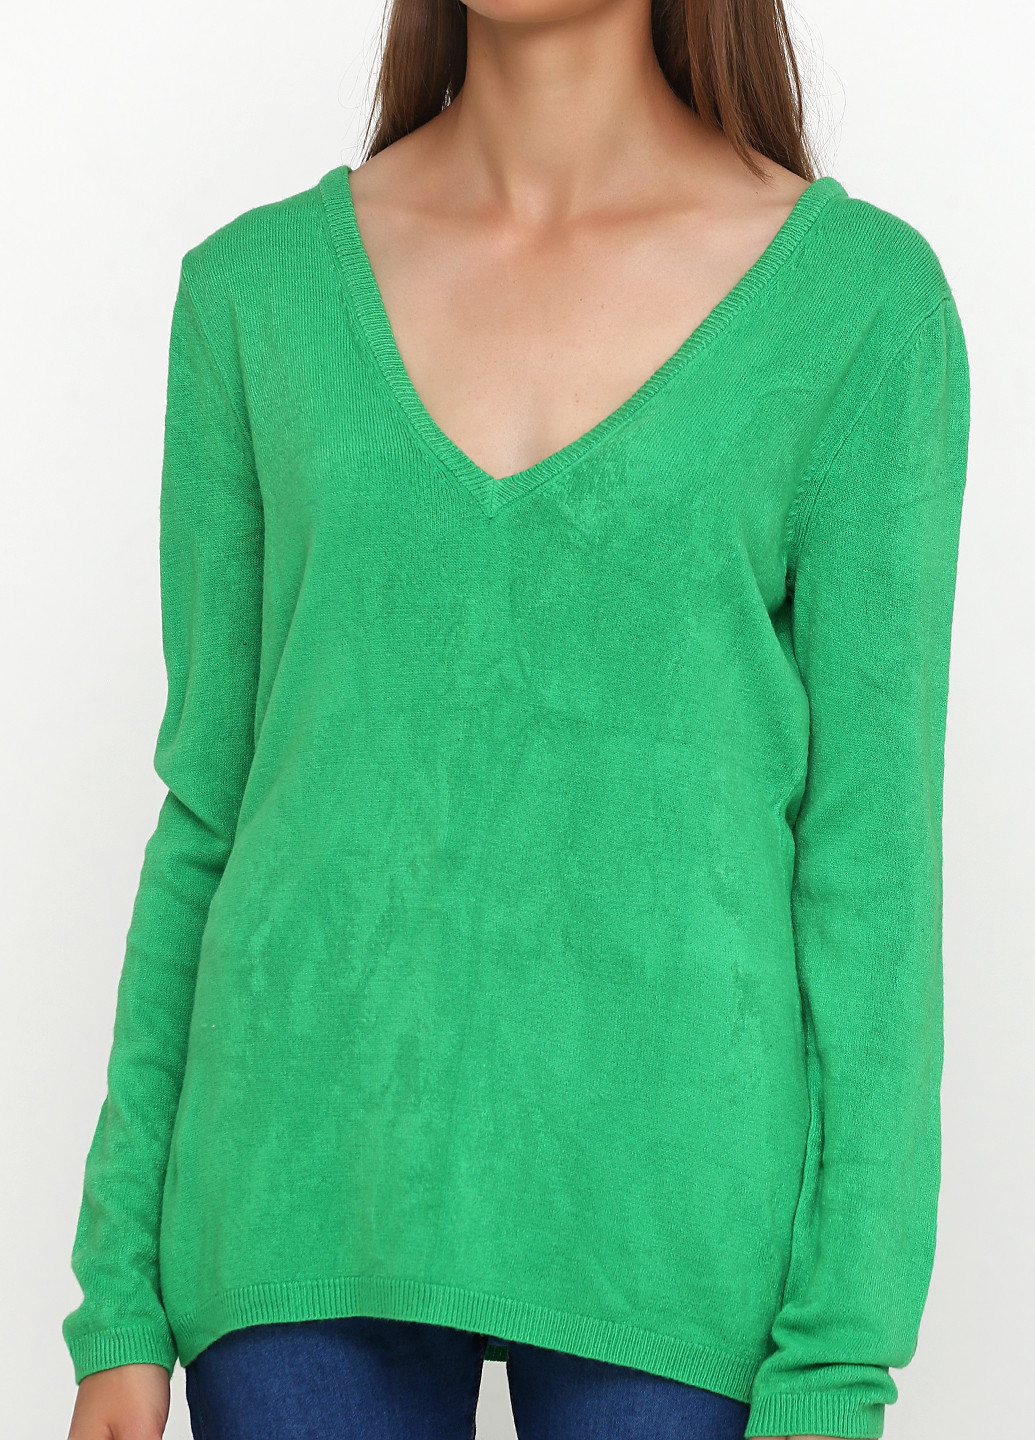 Зеленый демисезонный пуловер пуловер CHD